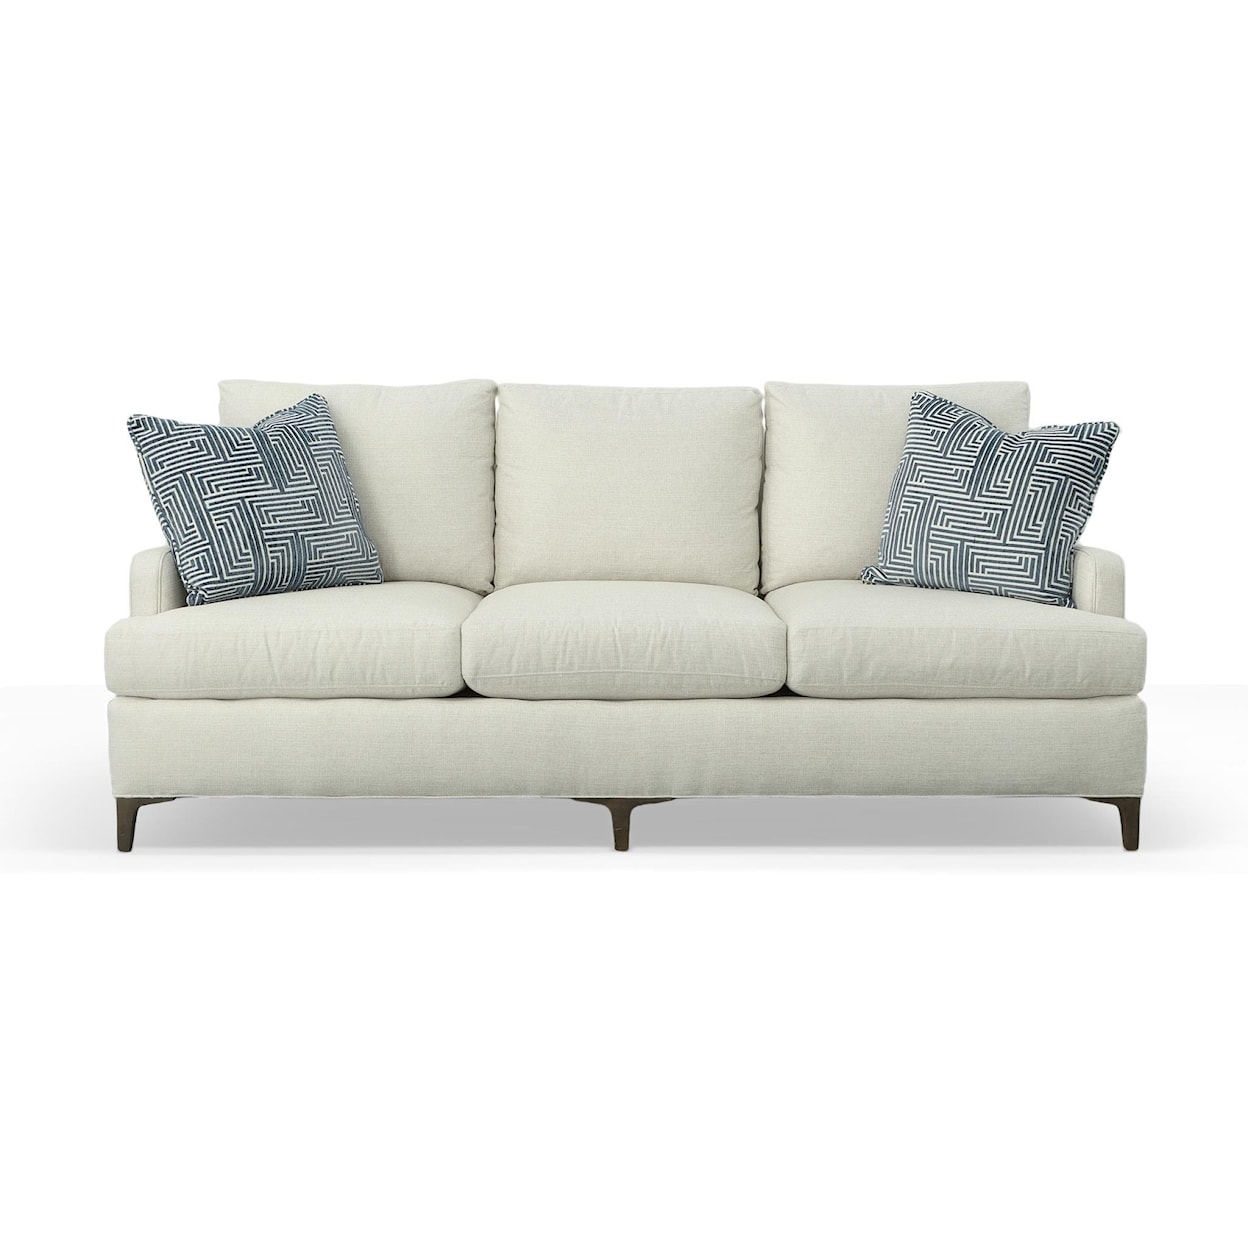 Fairfield Remy-Libby Langdon 3 Cushion Sofa